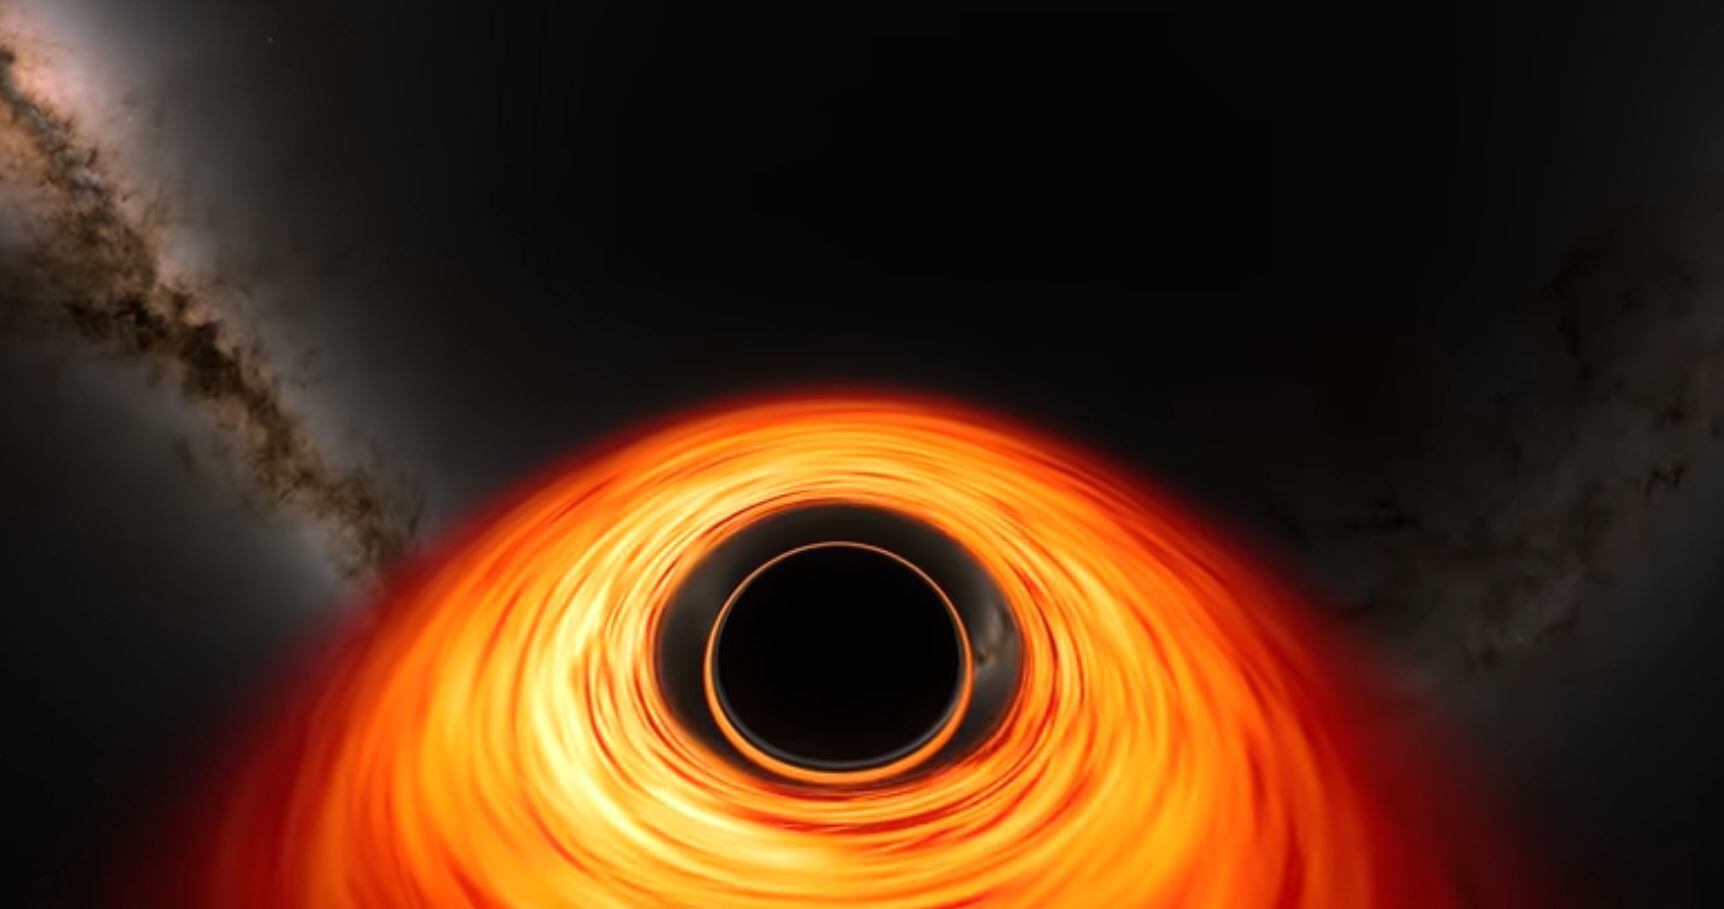 la nasa difunde un hipnótico vídeo que simula cómo sería caer en un agujero negro